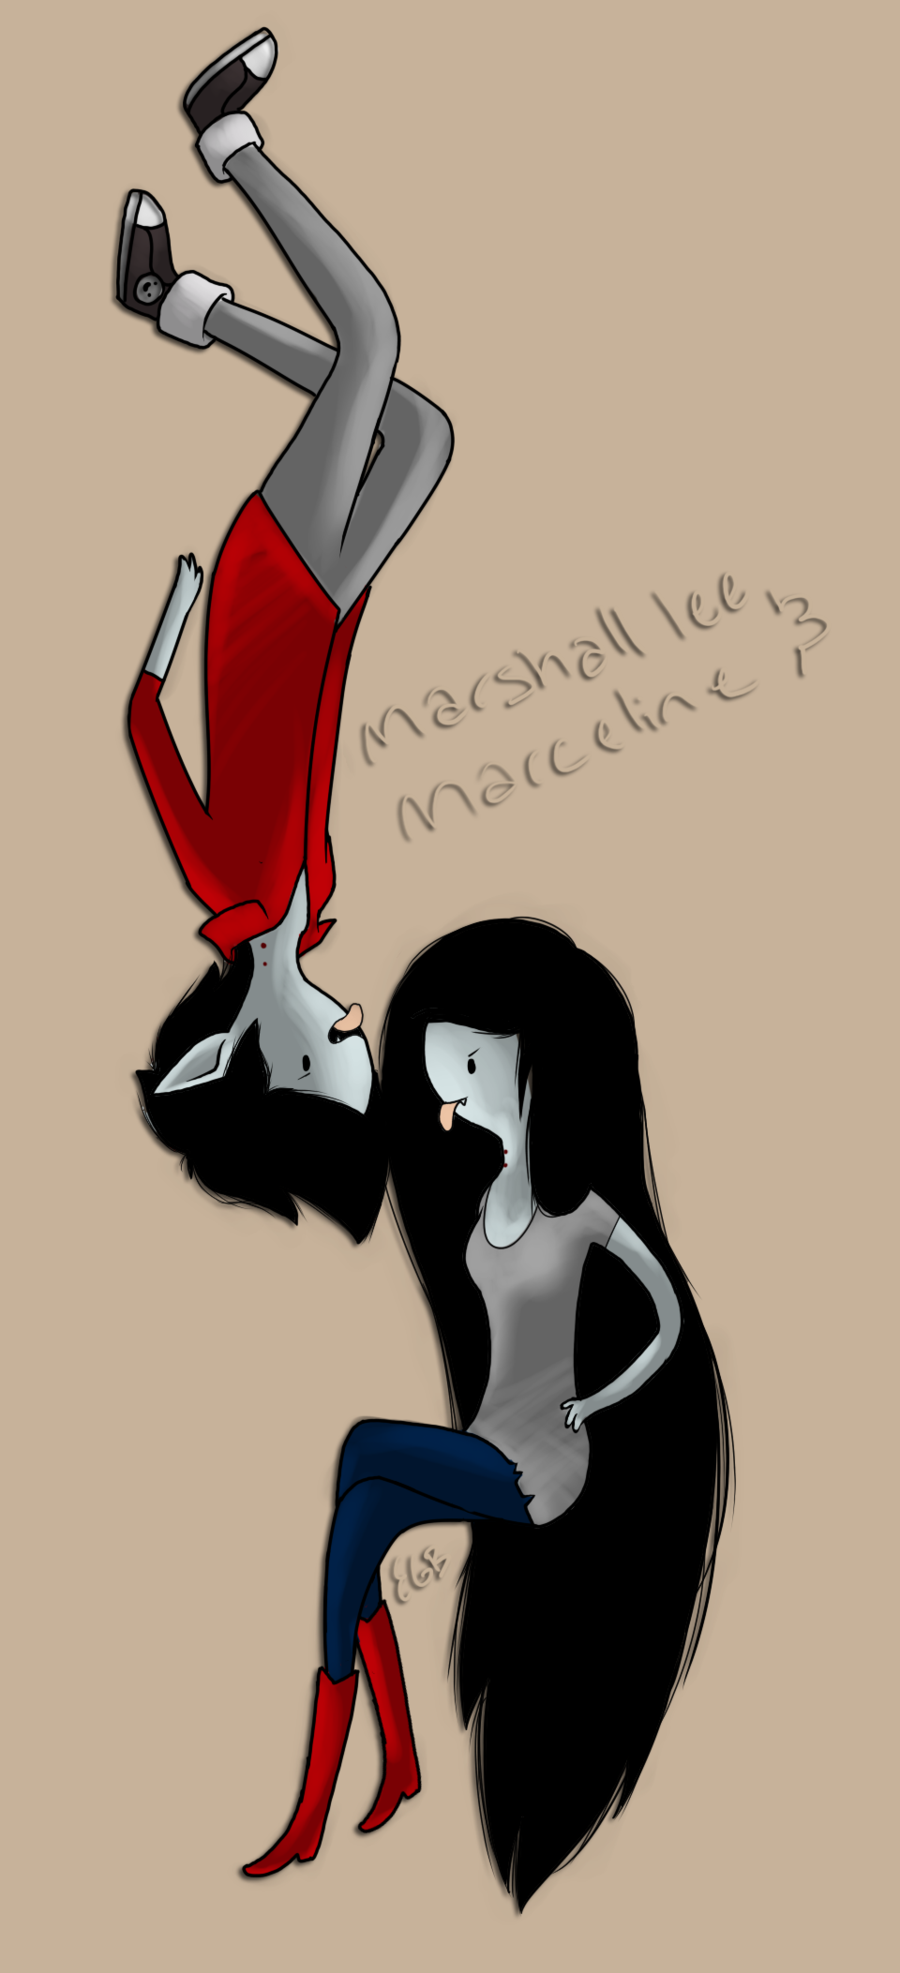 Marceline and Marshall lee by EGBart. Marceline, Marshall lee